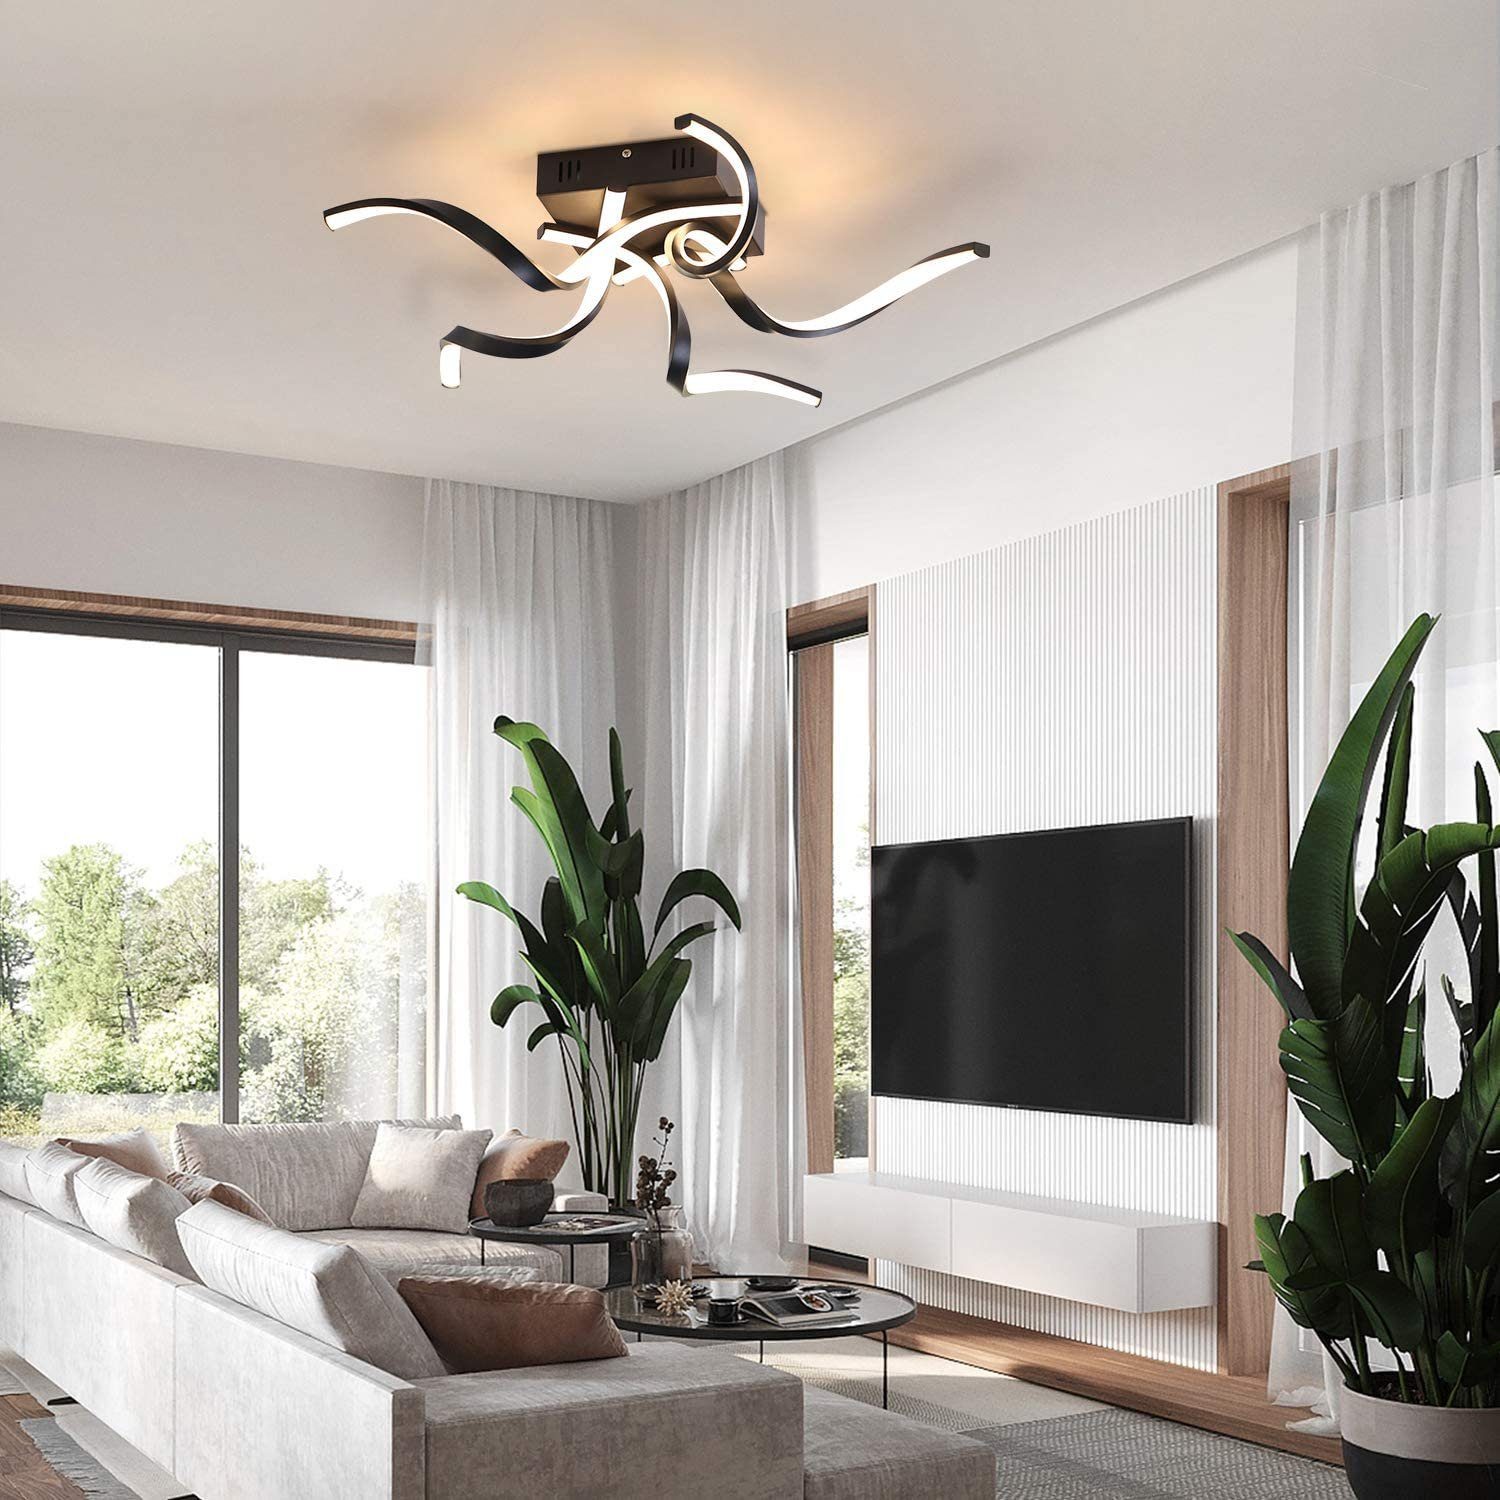 LED Deckenleuchte 48W Warmweiß Deckenlampe Wohnzimmer Panel Küche Büro Lampe Neu 